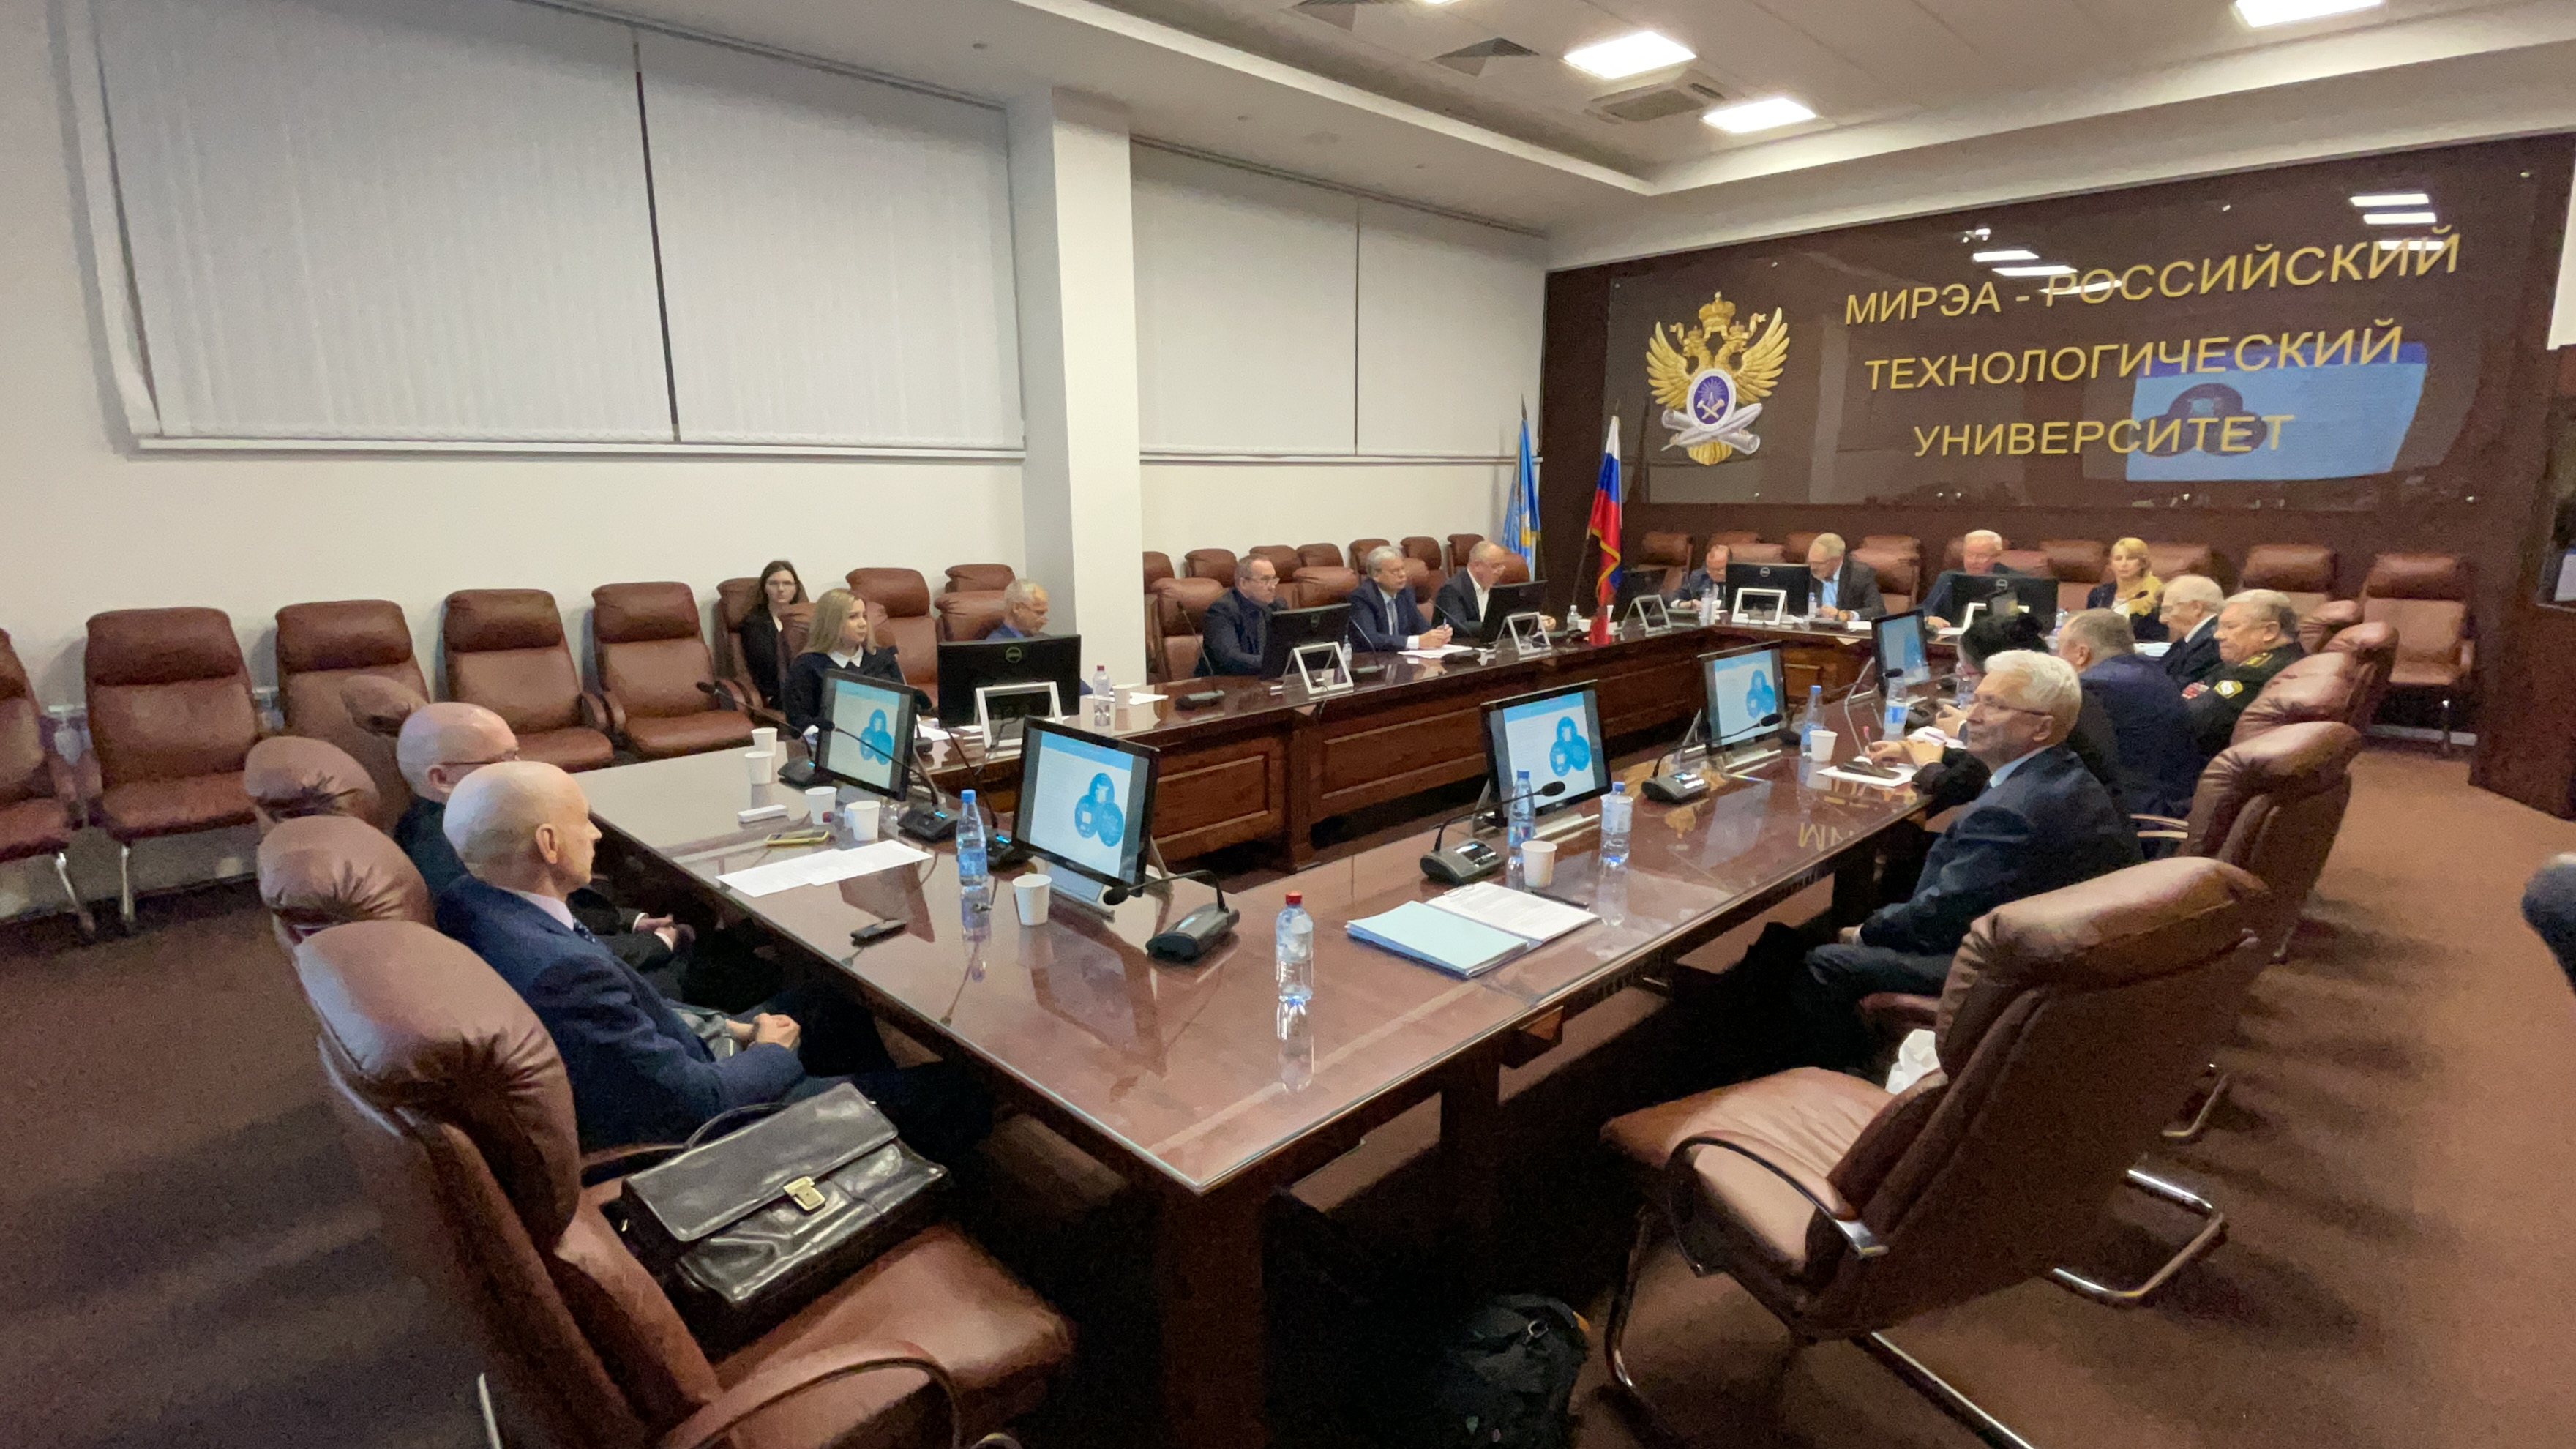 Заседание НЭС Морской коллегии при Правительстве РФ прошло в МИРЭА-РТУ